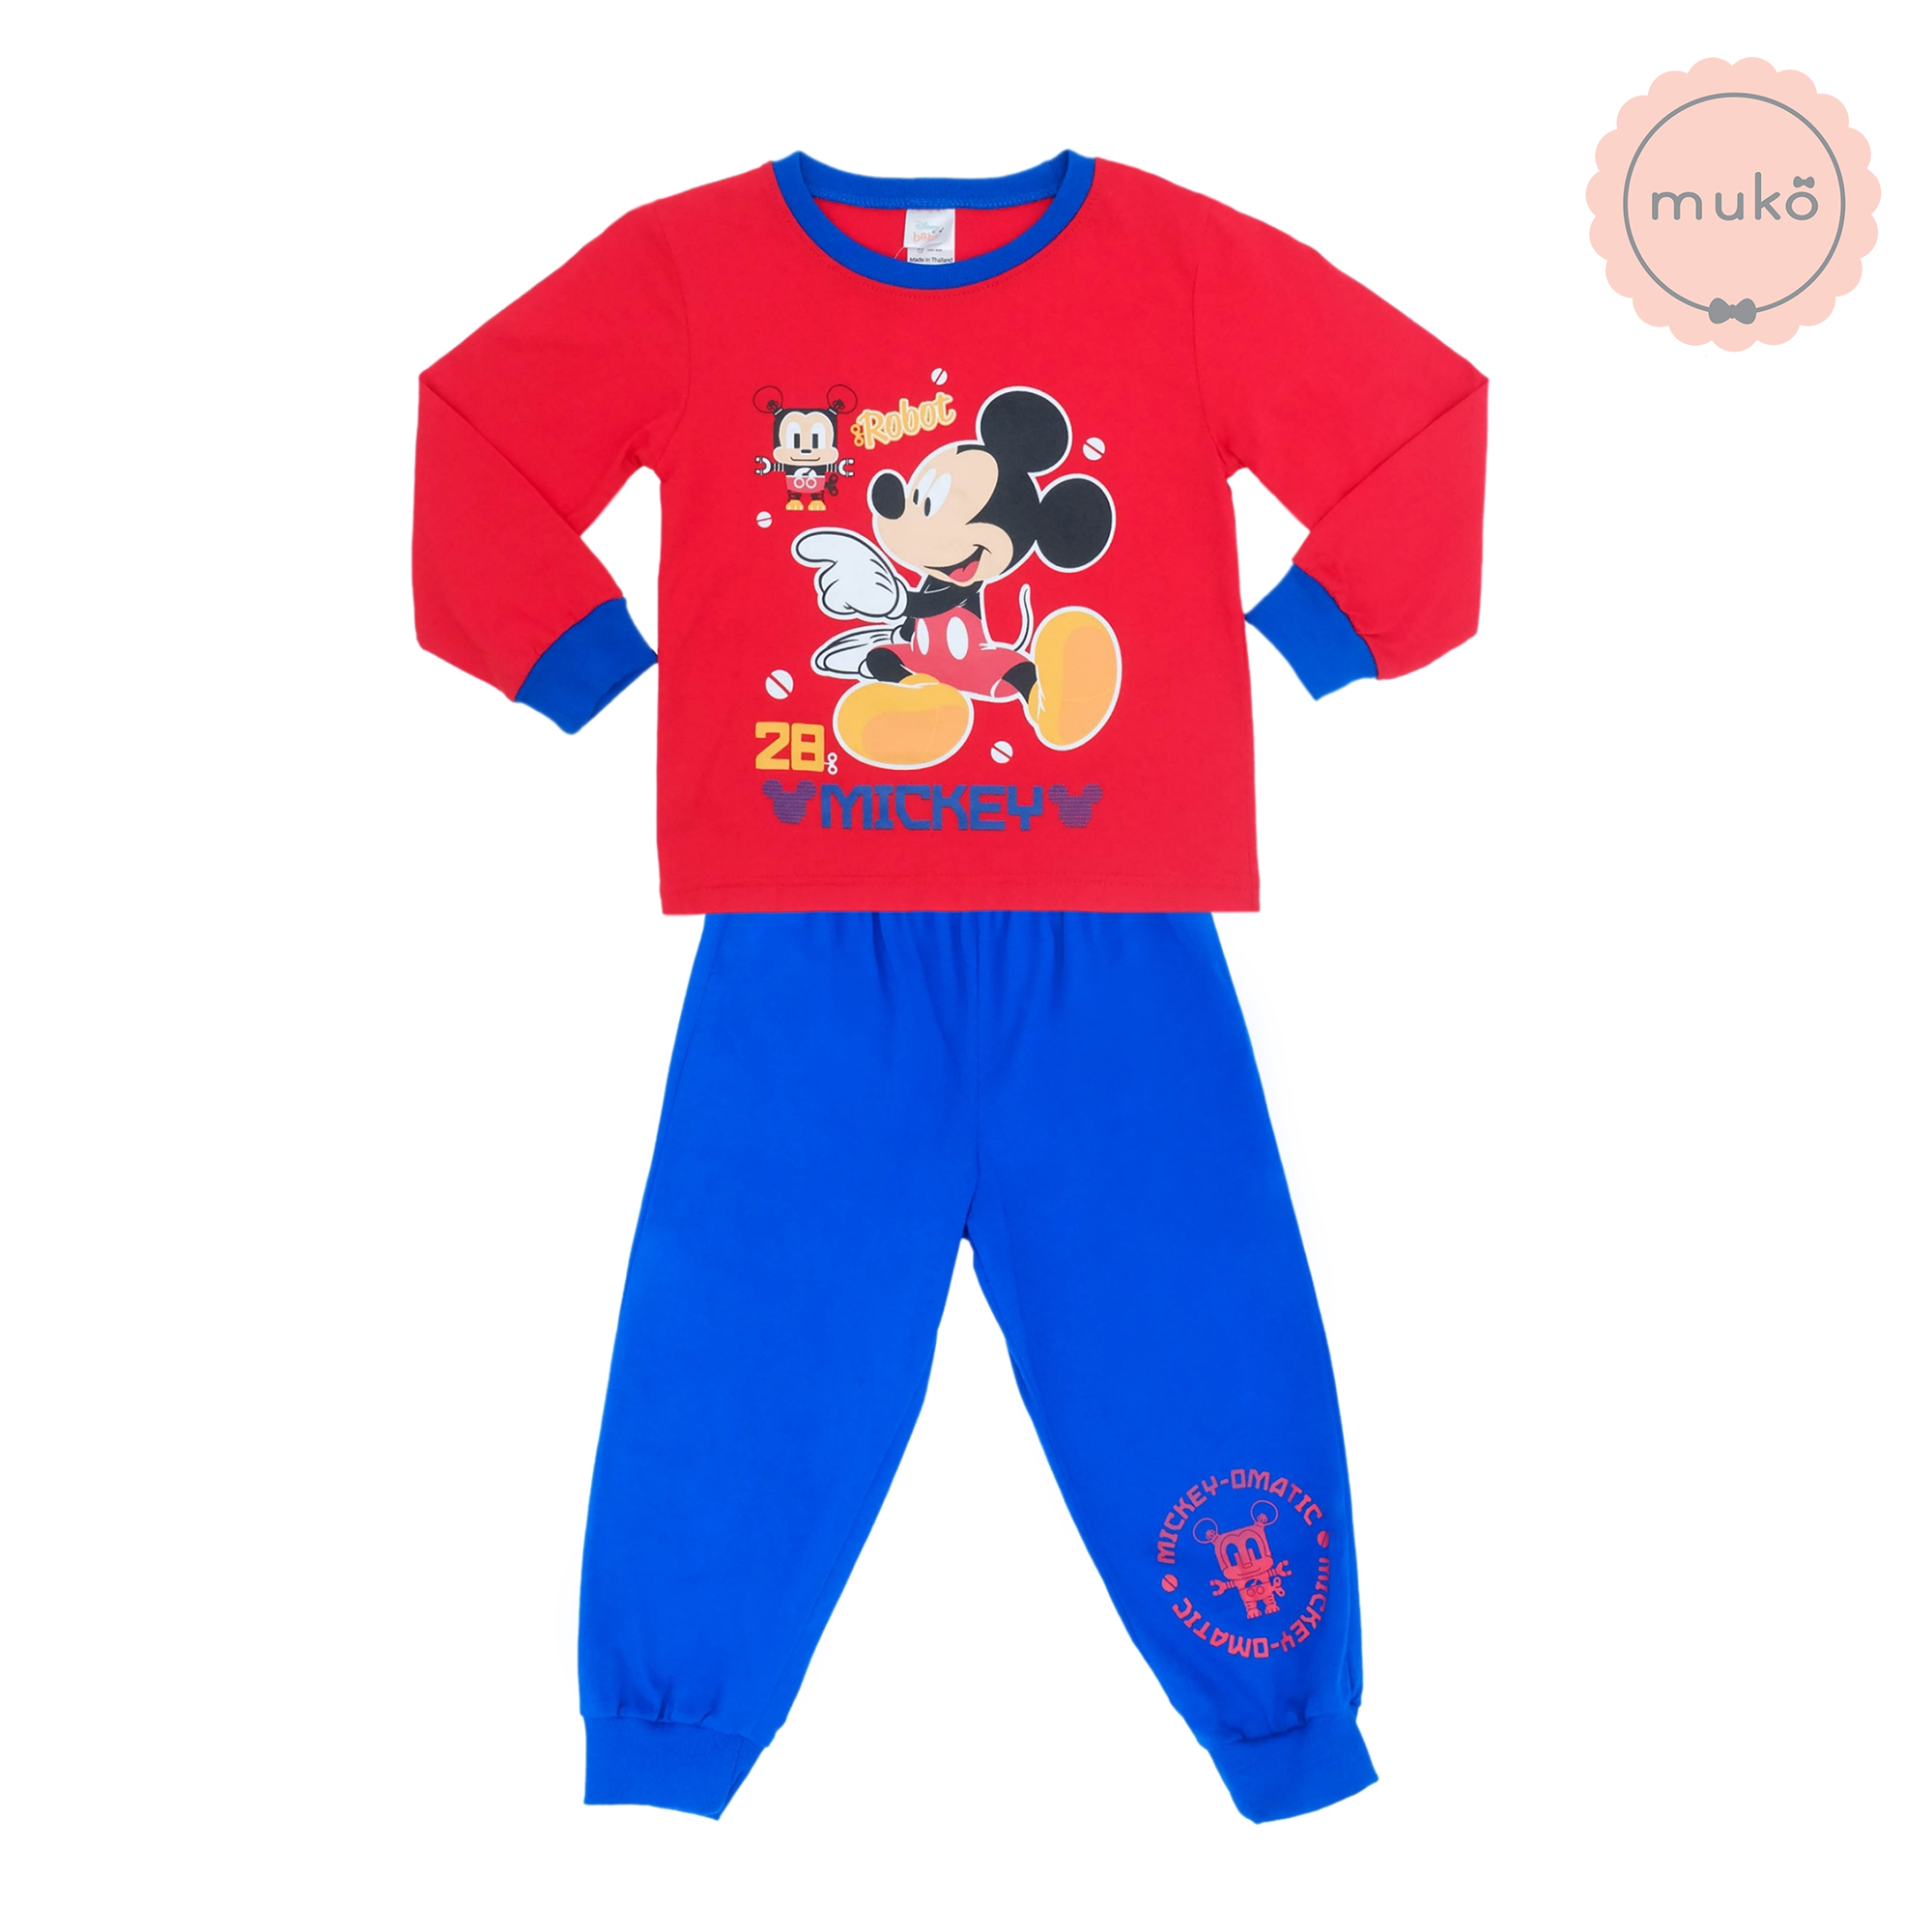 ชุดเด็ก 6 เดือน - 1 ขวบ แขนยาว-ขายาว (Size 1) DMK127-02-3-Red 1 ลาย มิกกี้ เมาส์ Mickey Mouse สีแดง